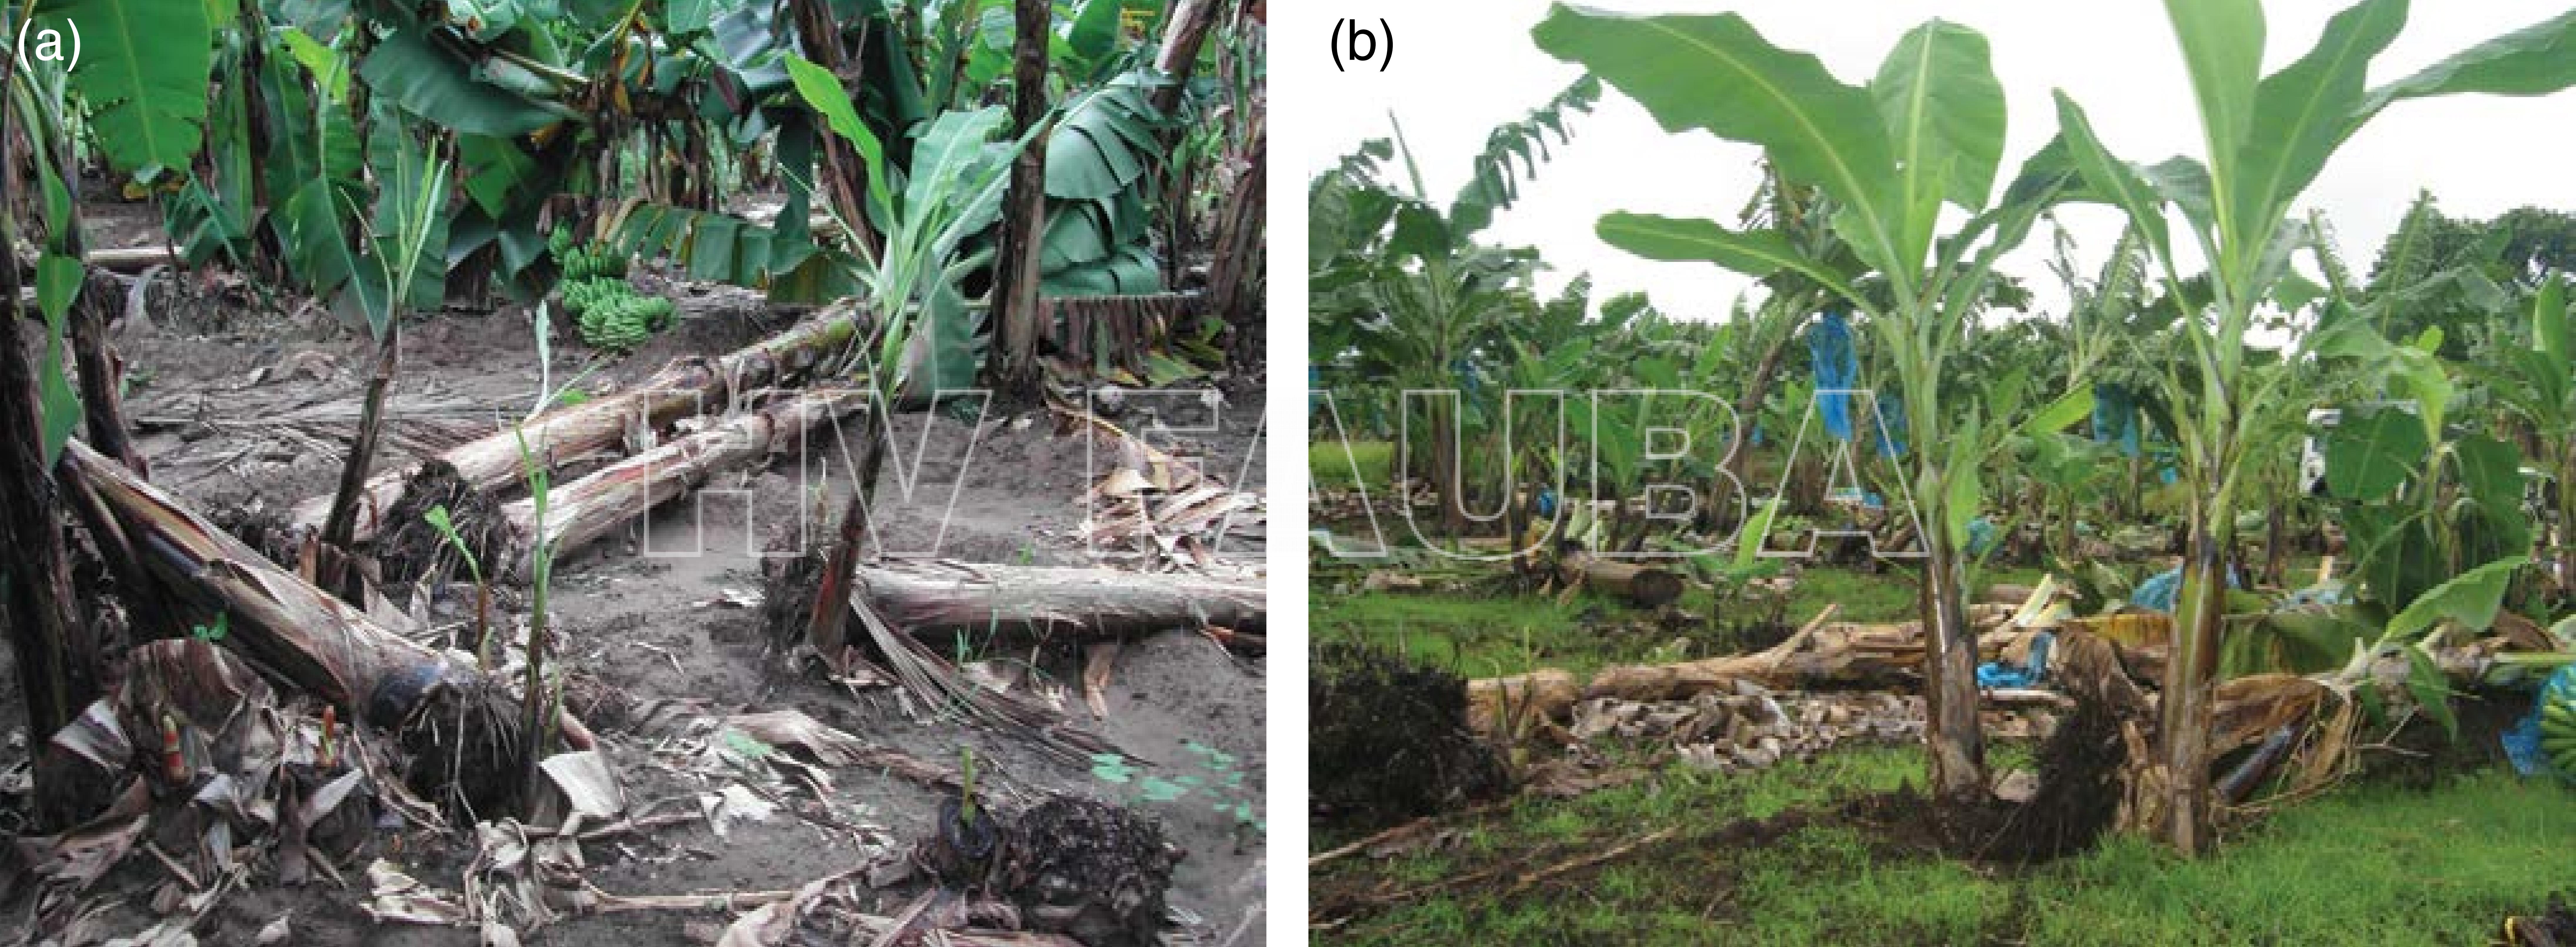 Plátanos caídos debido a la infección por nematodos y anclaje reducido del sistema de raíces del banano debido a Radopholus similis en Kenia (a) y en Martinica (b). Autor: D. Coyne y P. Quénéhervé, publicado en Sikora et al. 2018